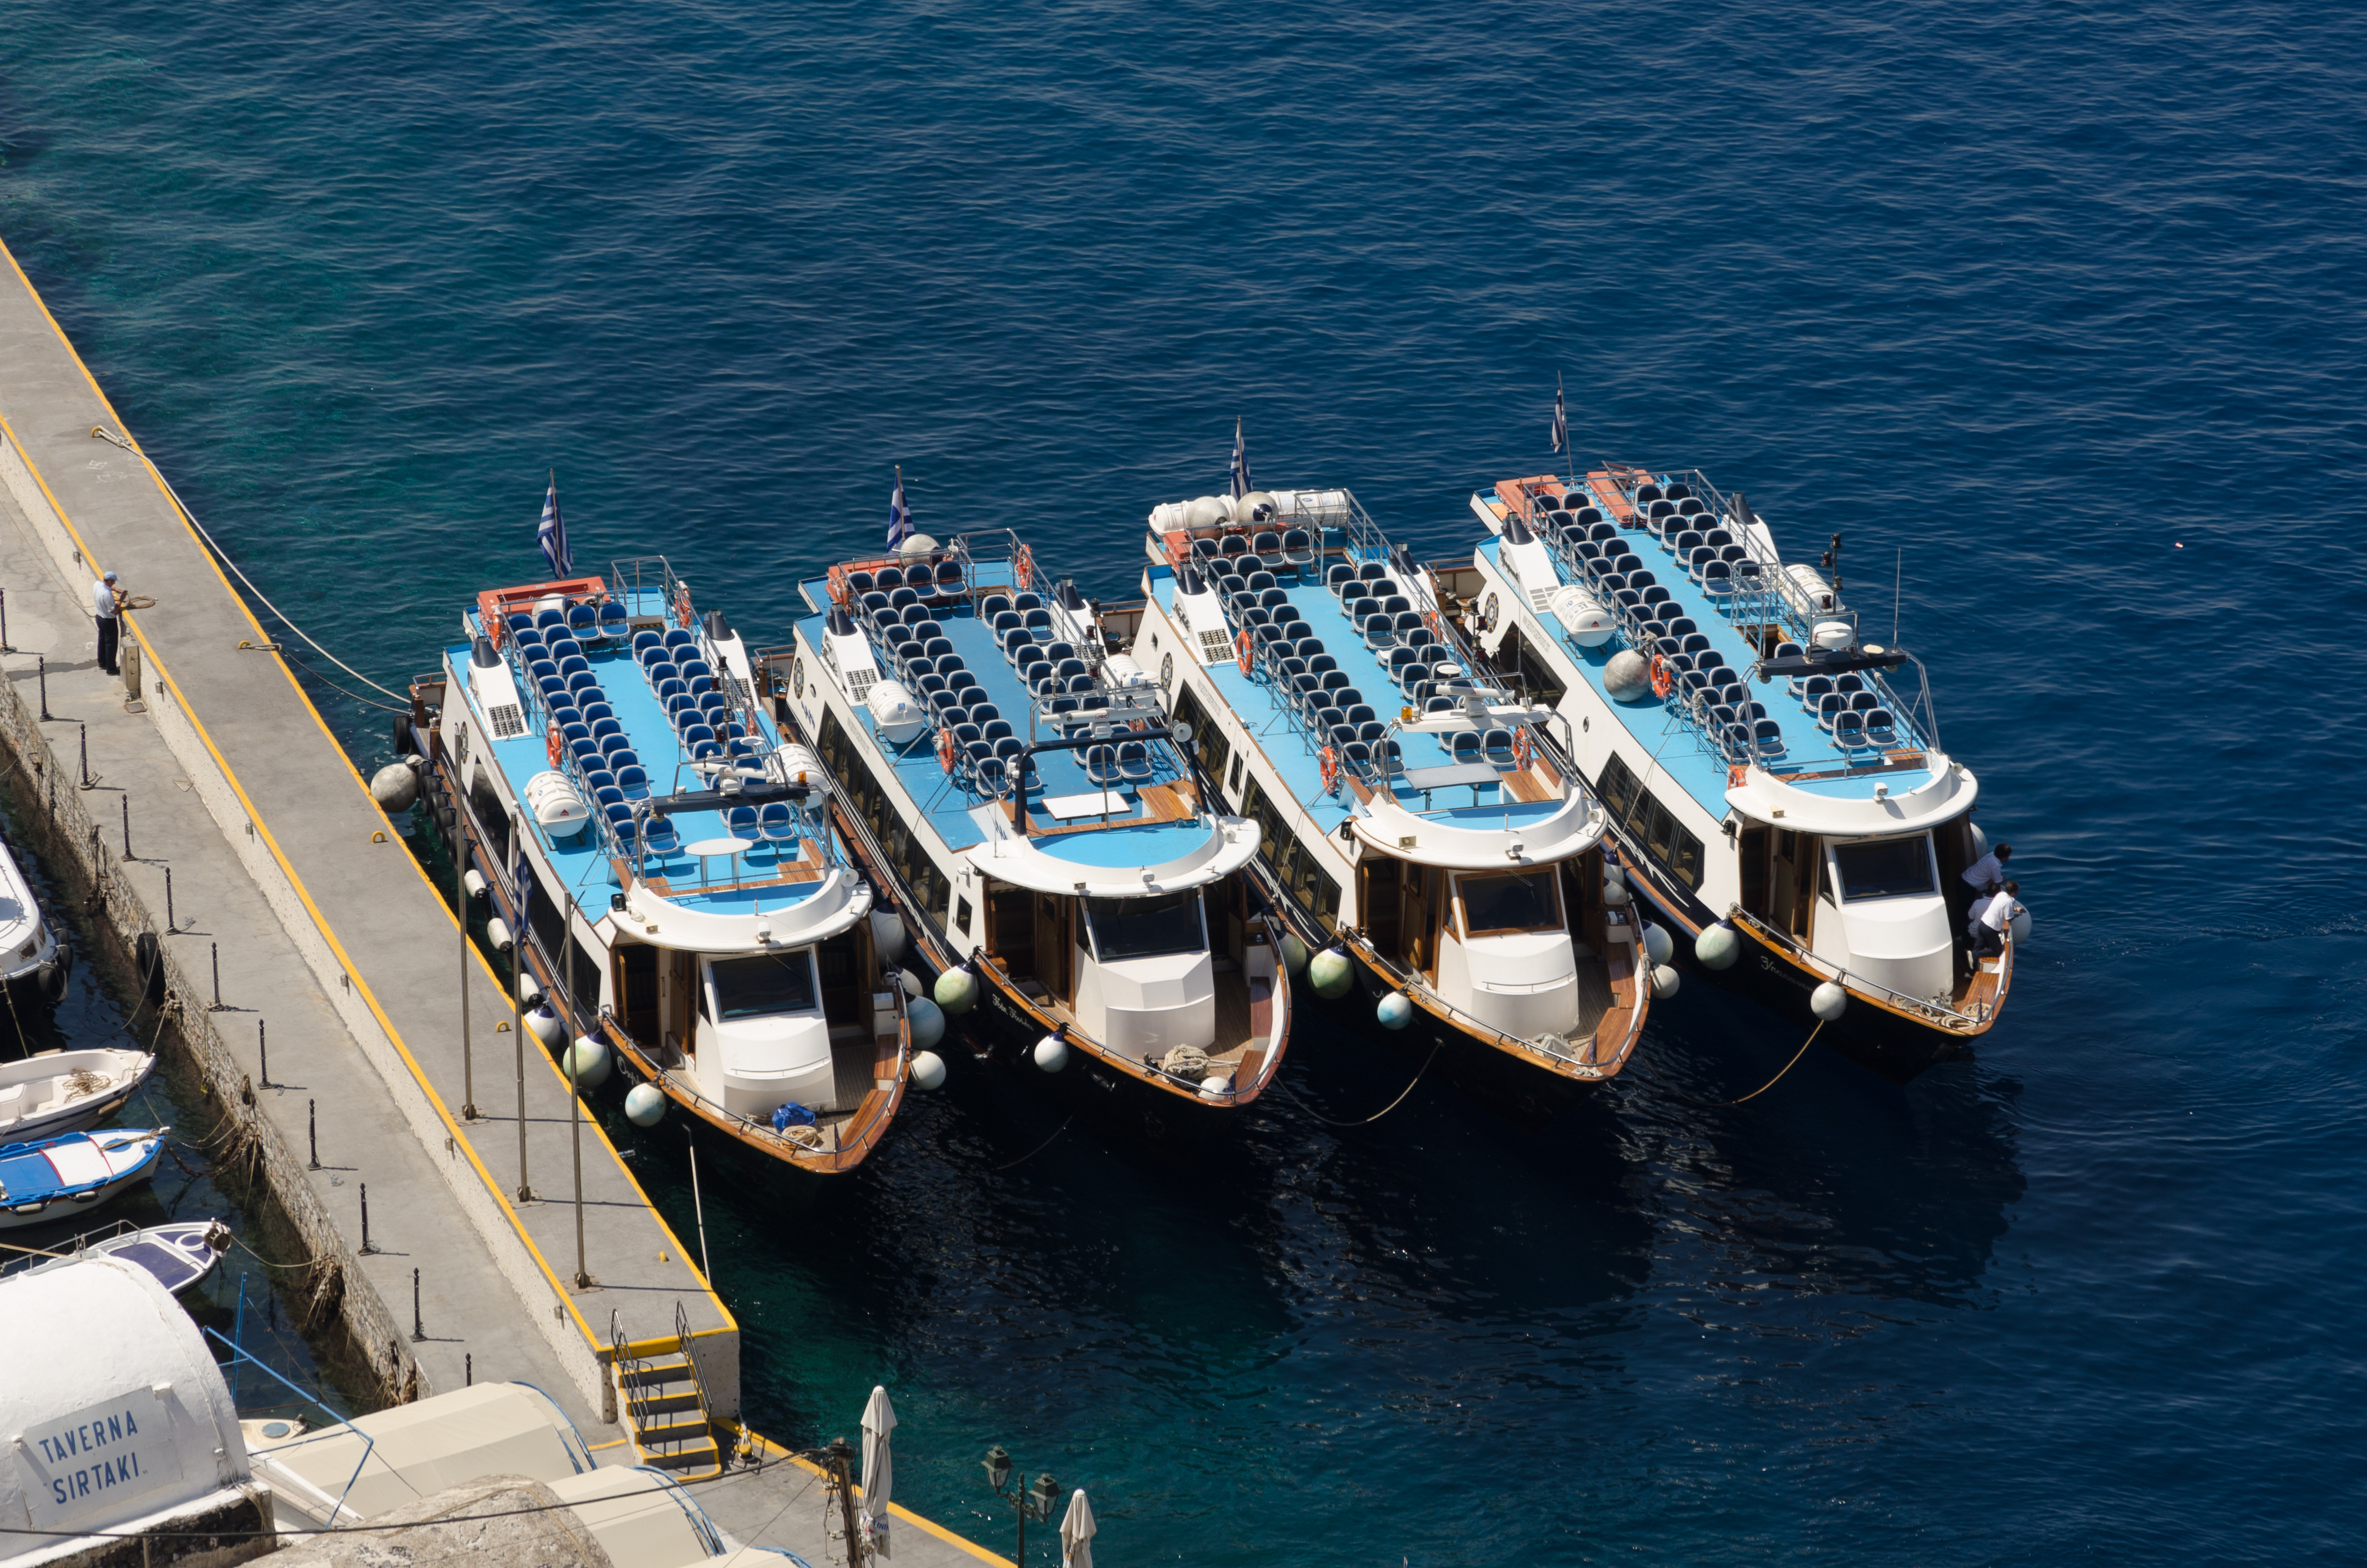 Tour boats in Mesa Gialos harbour - Fira - Santorini - Greece - 03